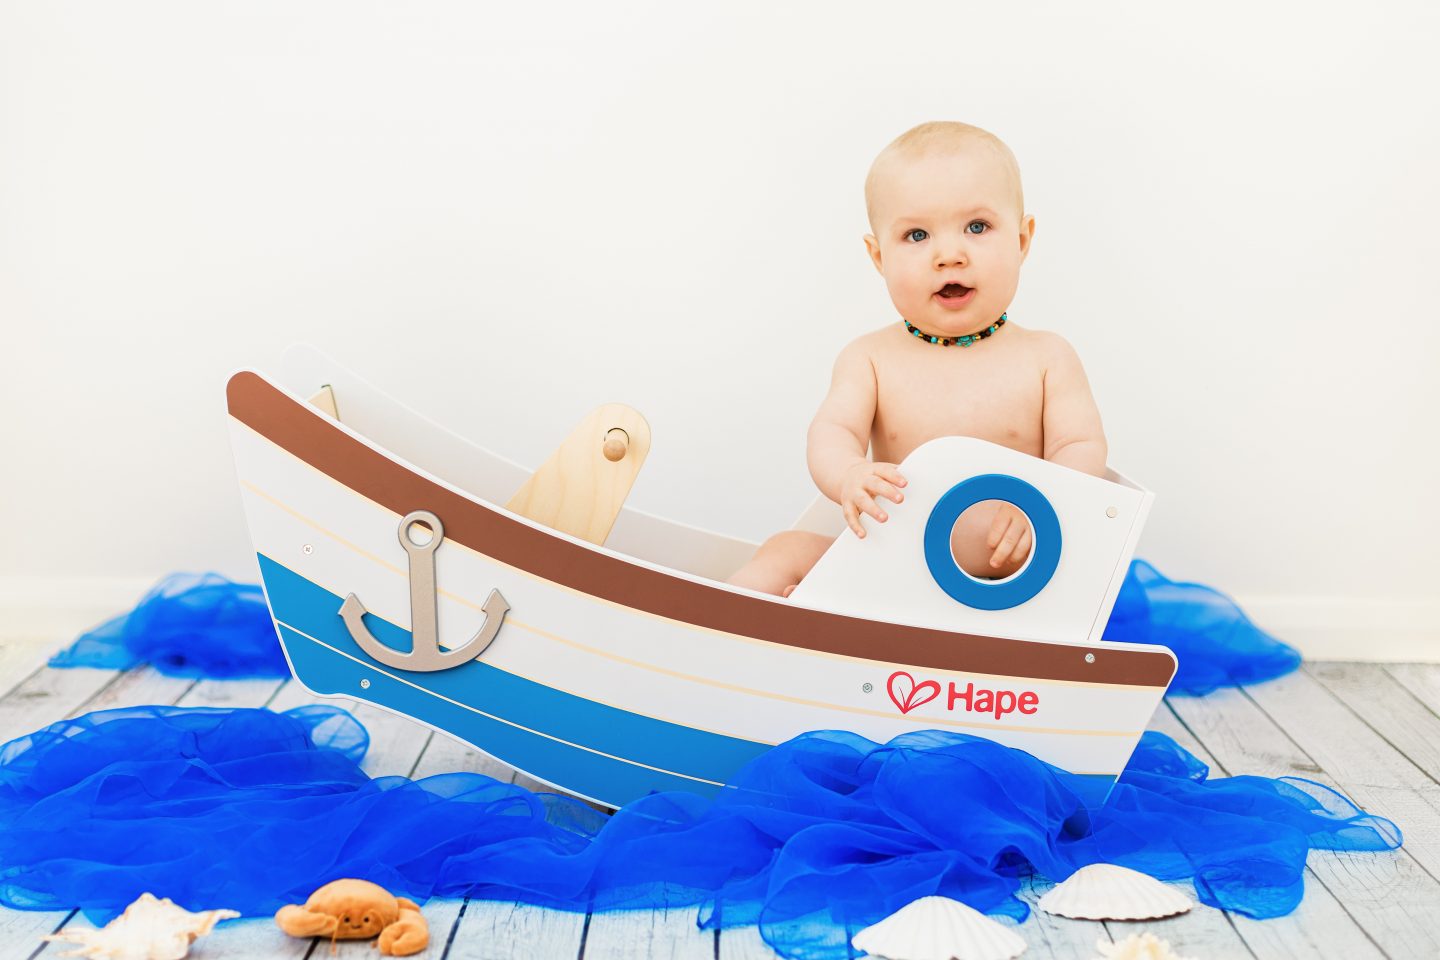 Baby's 1st birthday photoshoot seaside boat